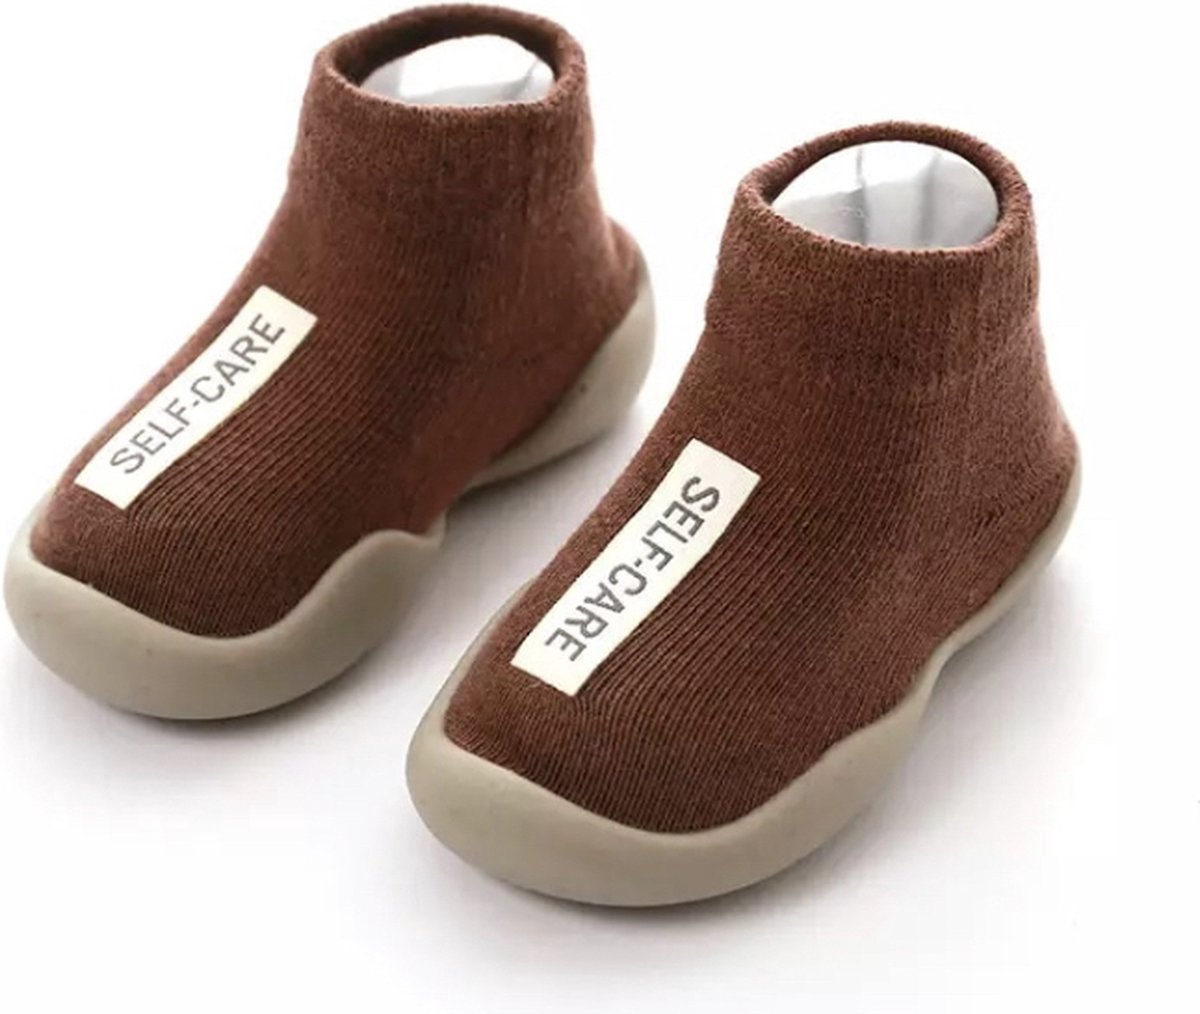 Anti-slip schoenen voor kinderen - Sloffen van Baby-Slofje - Herfst - Winter - Mokka Bruin maat 26/27